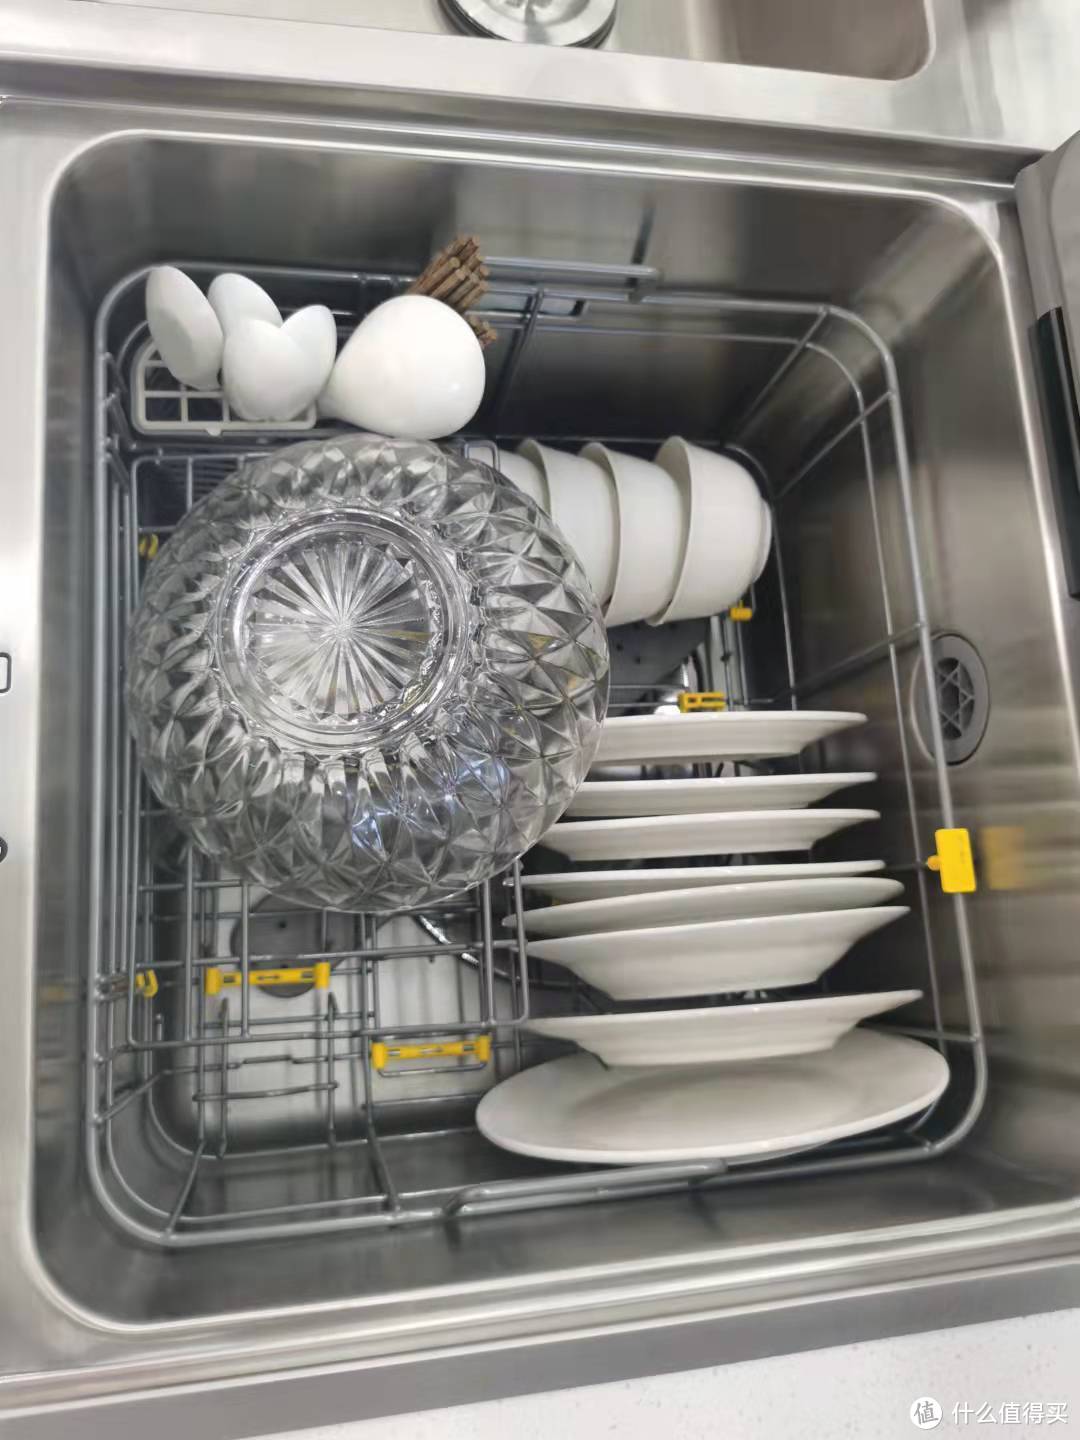 洗碗机只能洗碗？洗烘消除存一体机了解一下~附嵌入式及水槽式选购指南！